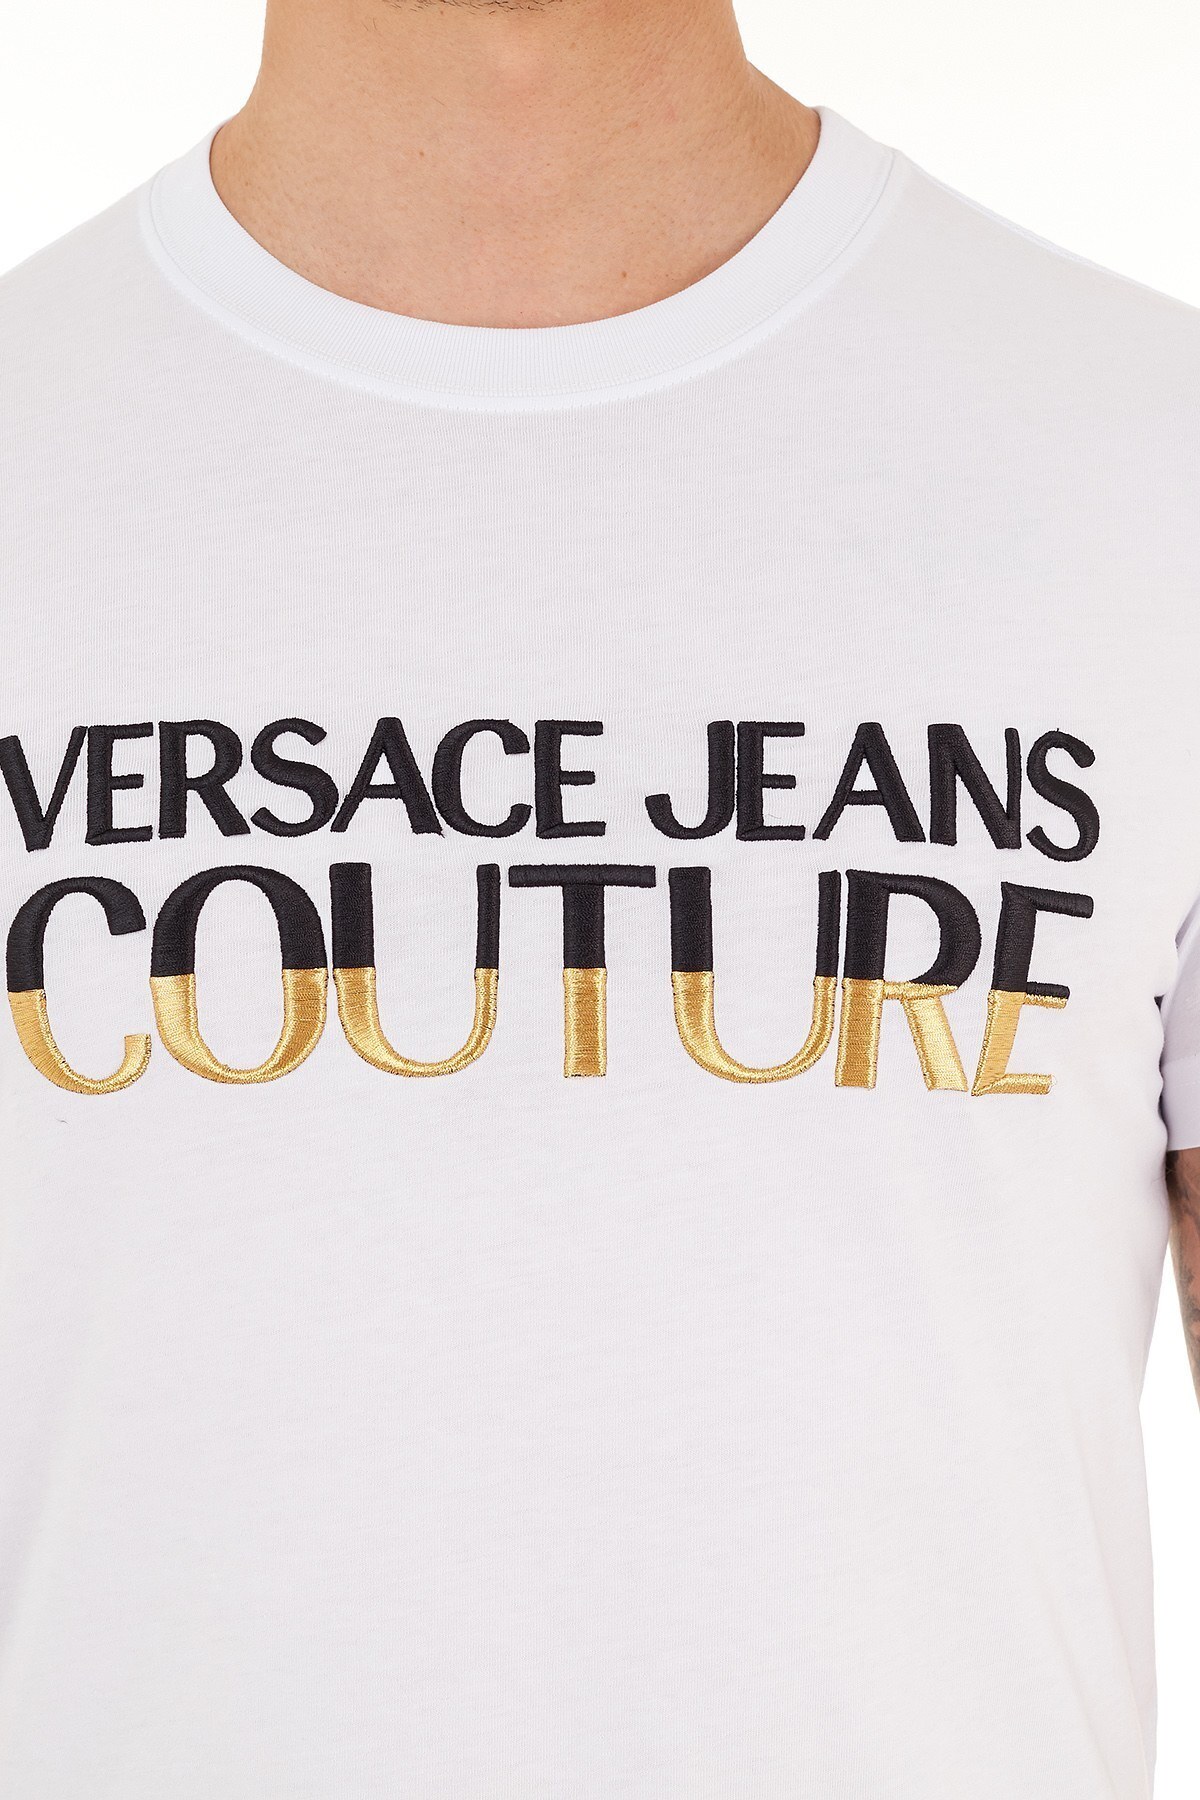 Versace Jeans Couture % 100 Pamuklu Bisiklet Yaka Erkek T Shirt B3GZB7TG 30319 K41 BEYAZ